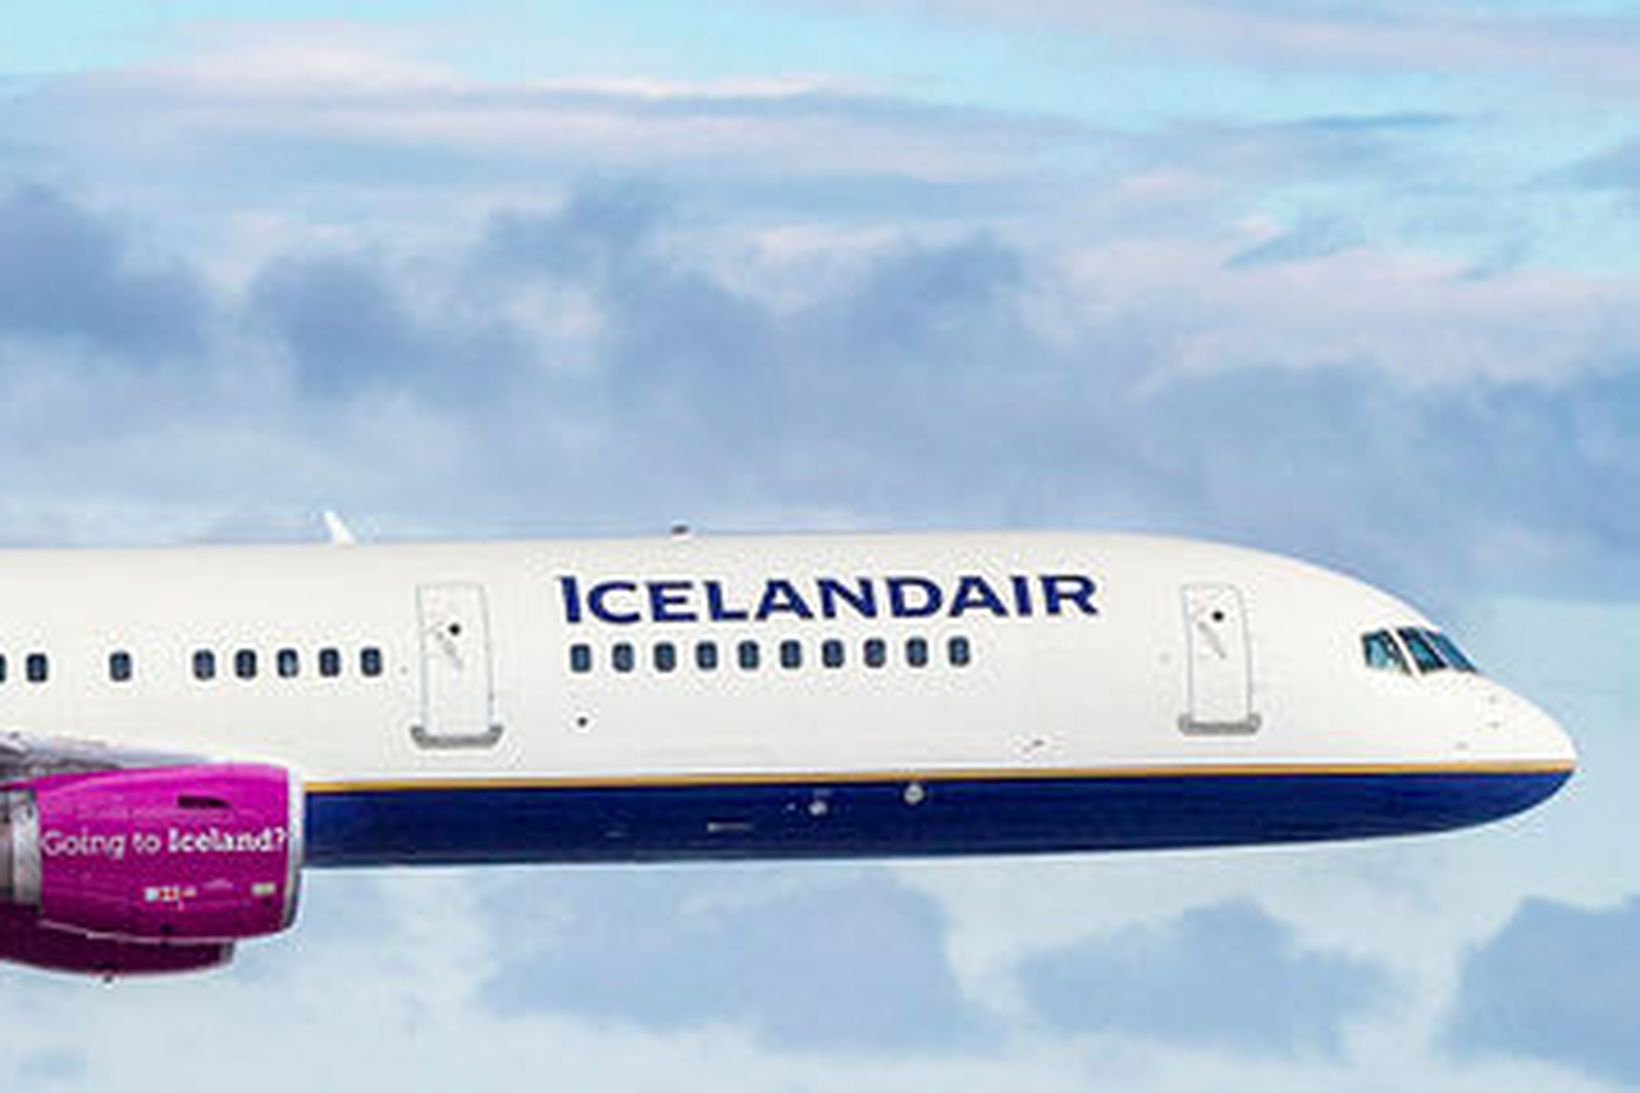 Samsett mynd af þotum WOW og Icelandair.